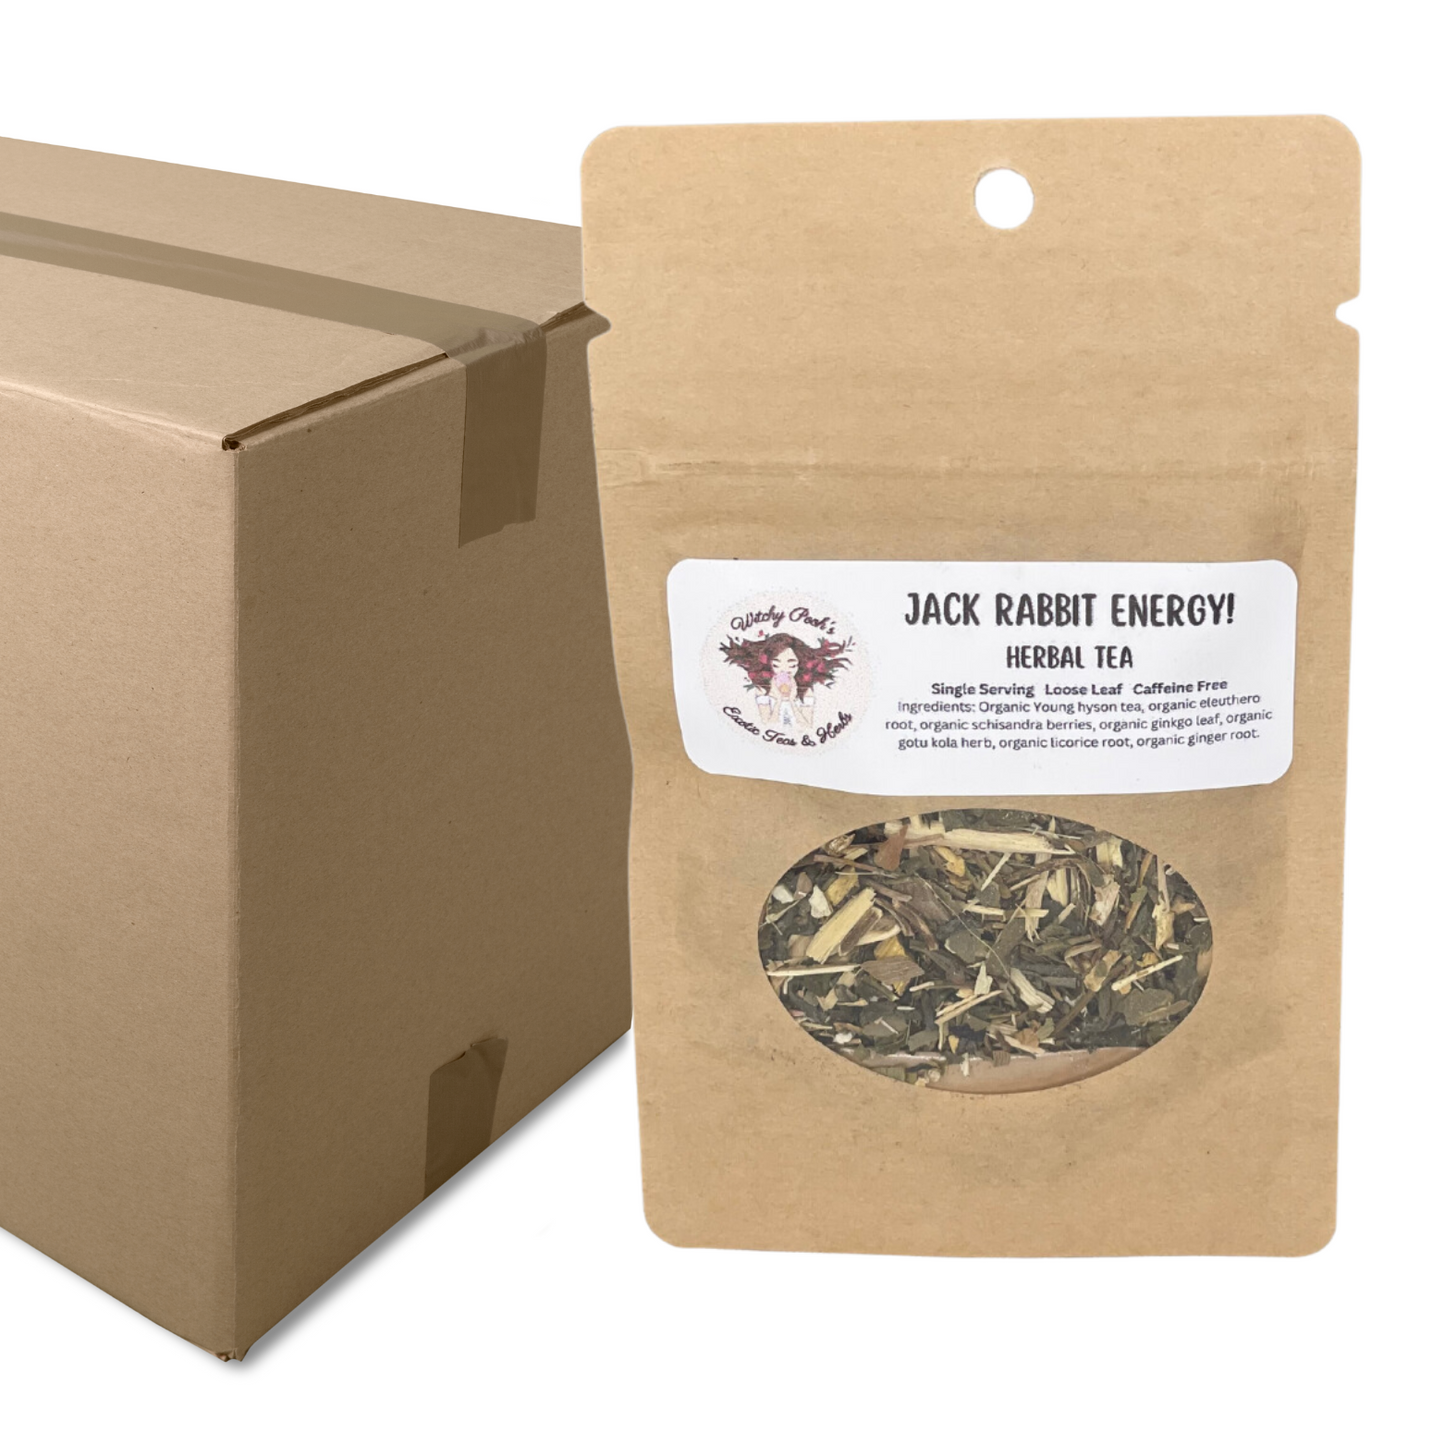 Jack Rabbit Energy! Loose Leaf Functional Herbal Tea, Caffeine Free, Sugar Free Energy Drink